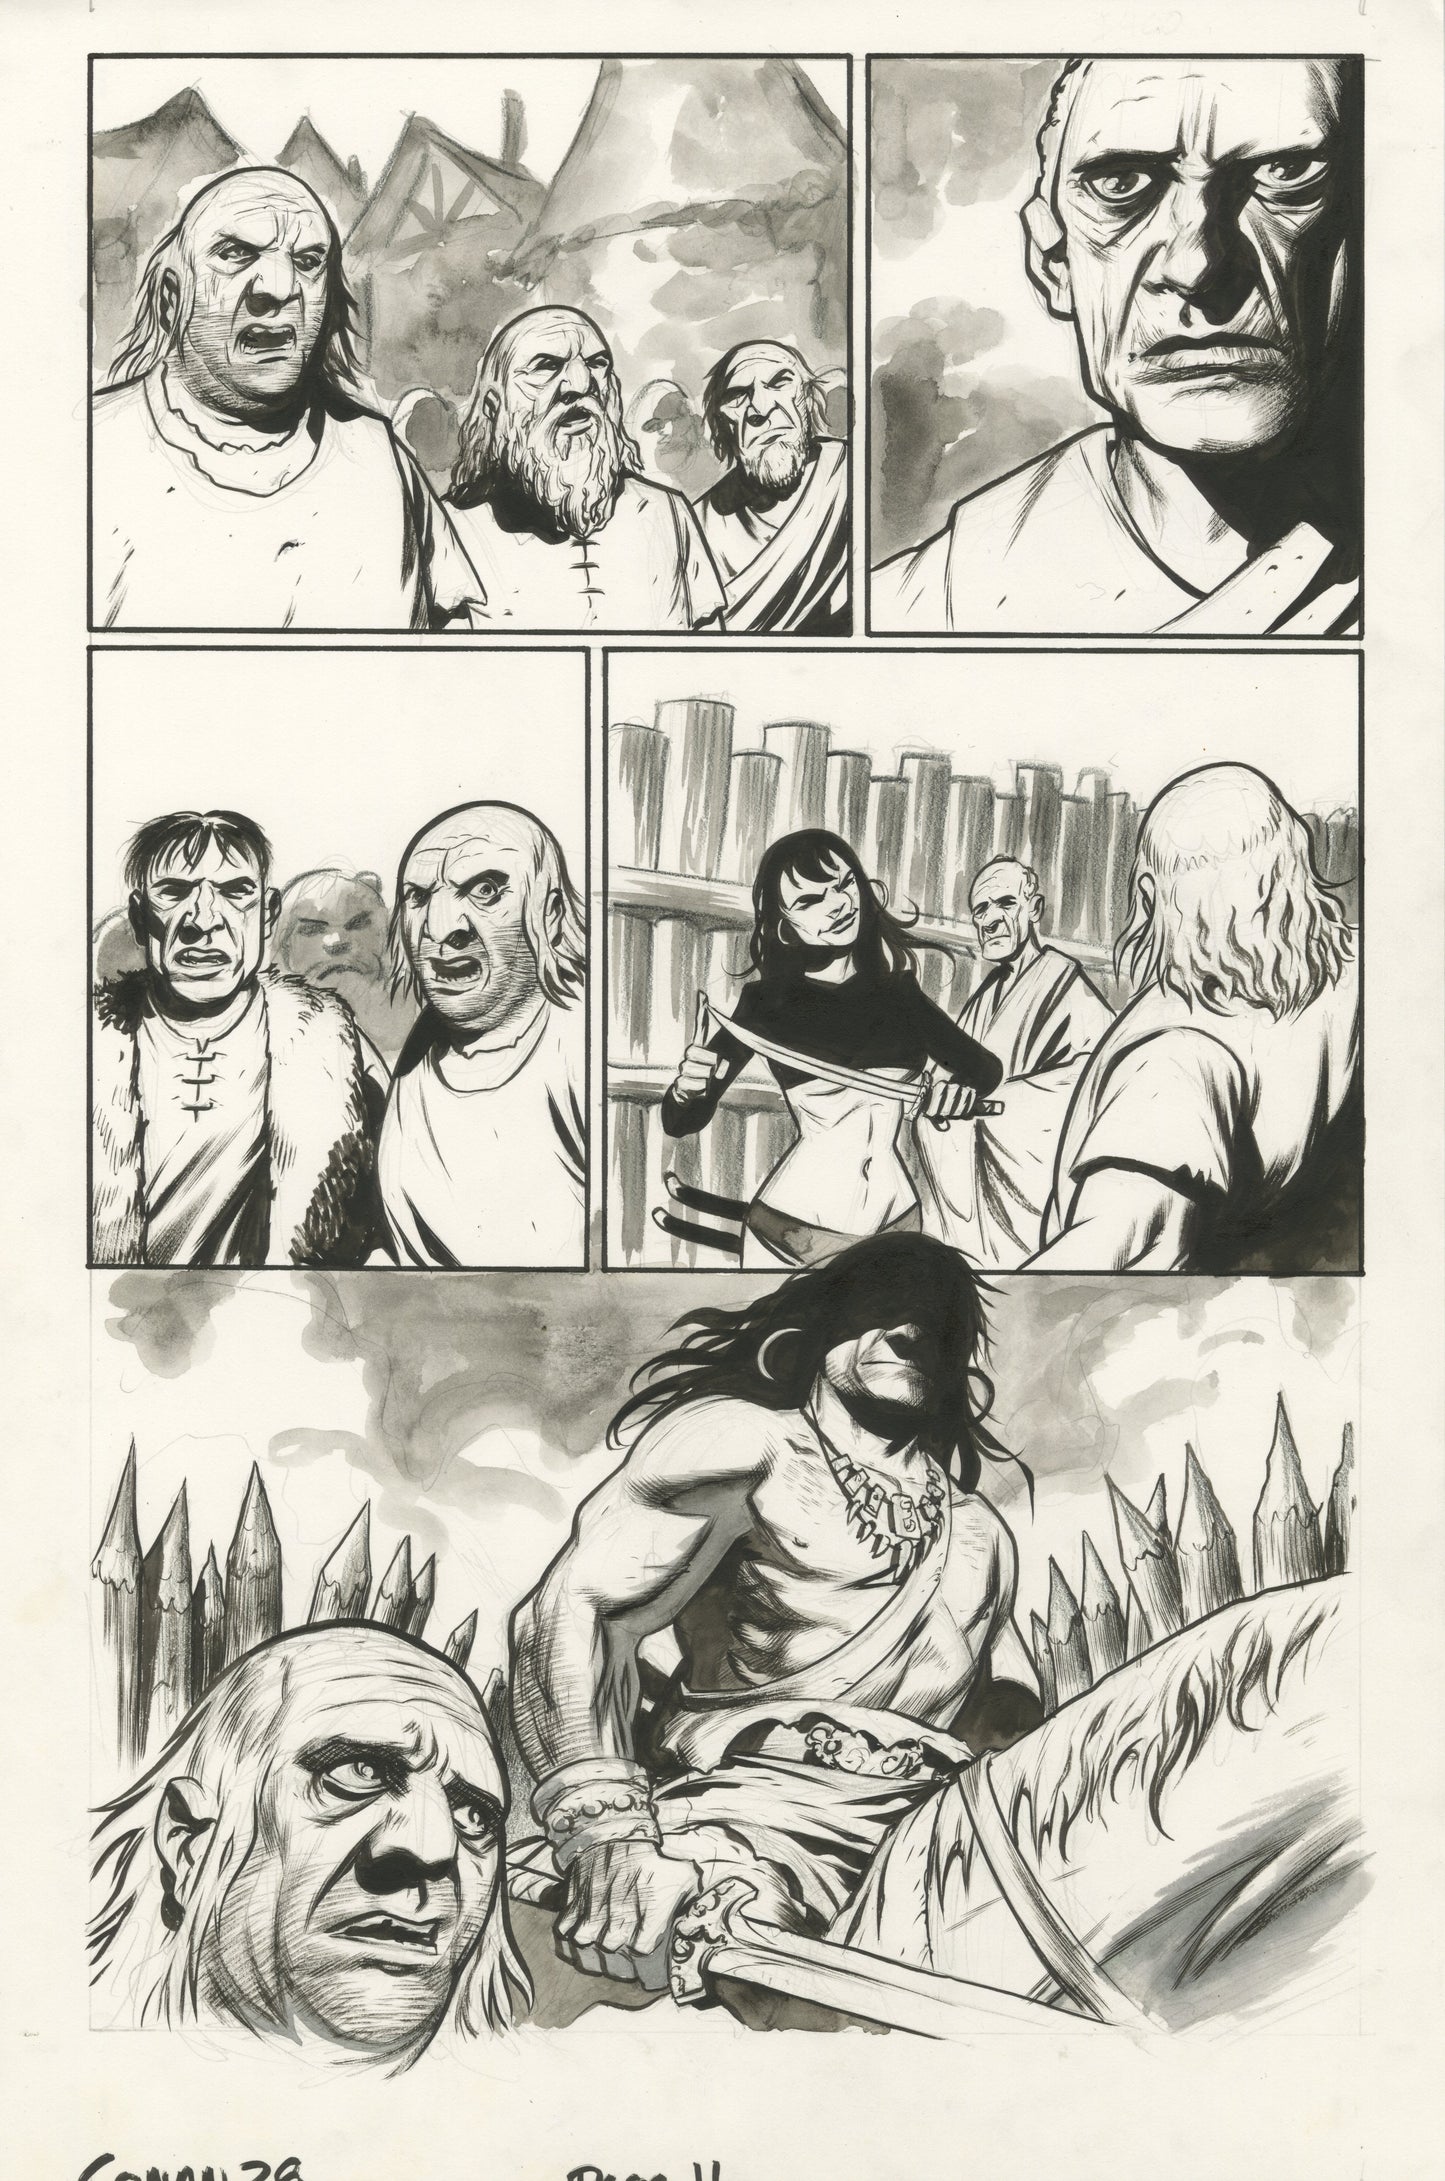 Conan #28, page #11 (2006, Dark Horse)